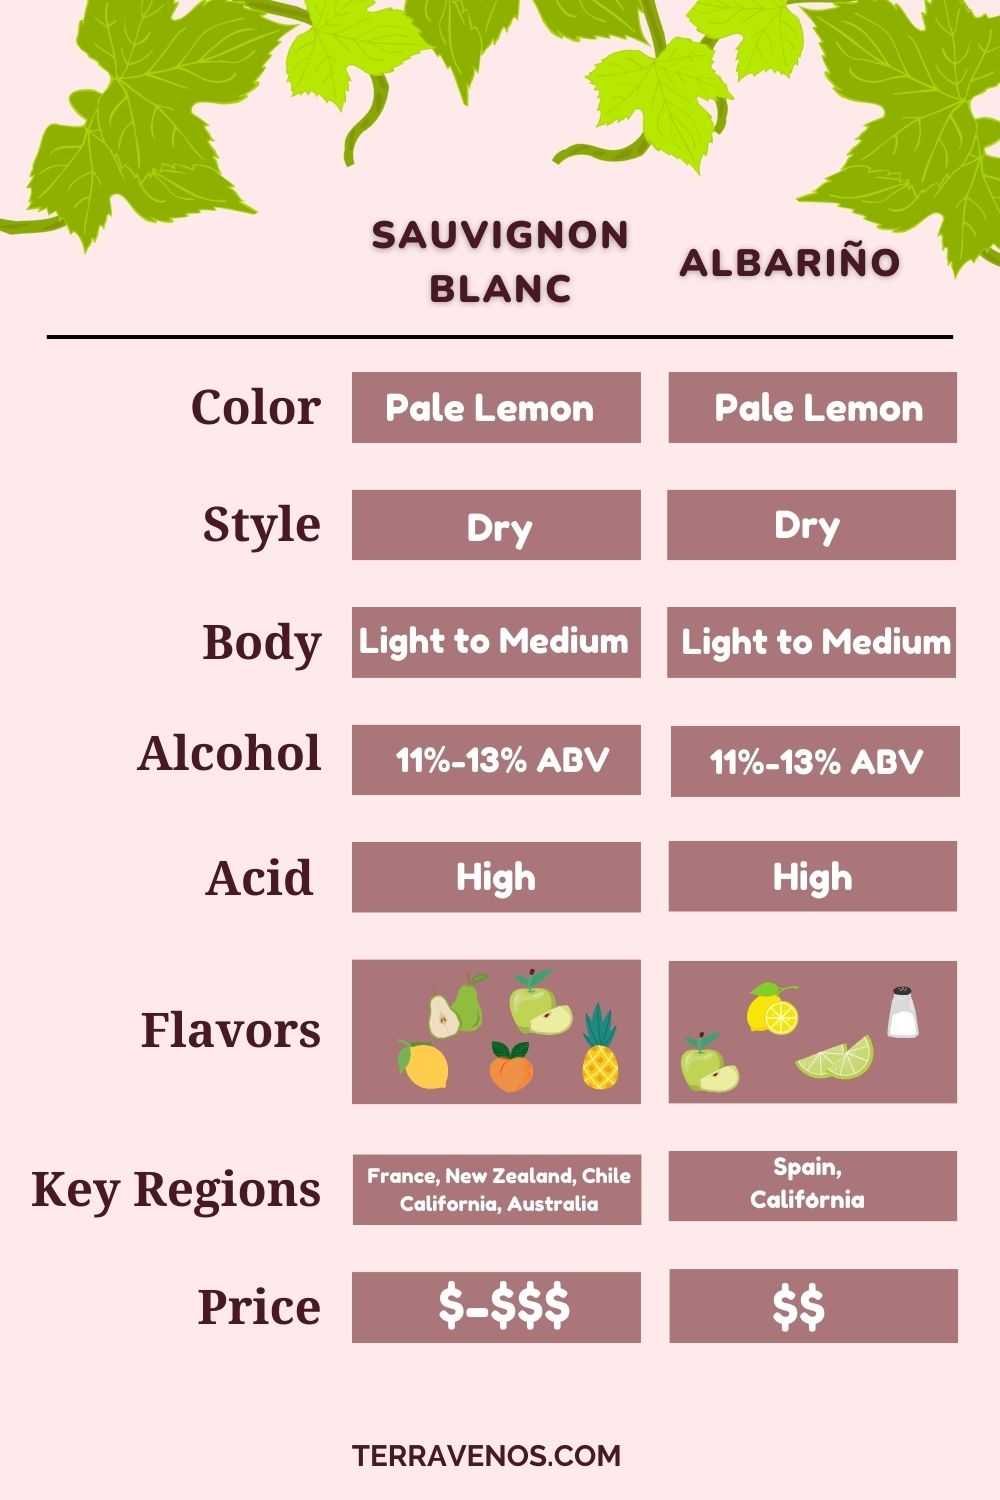 albarino-vs-sauvignon-blanc-wine-comparison-infographic